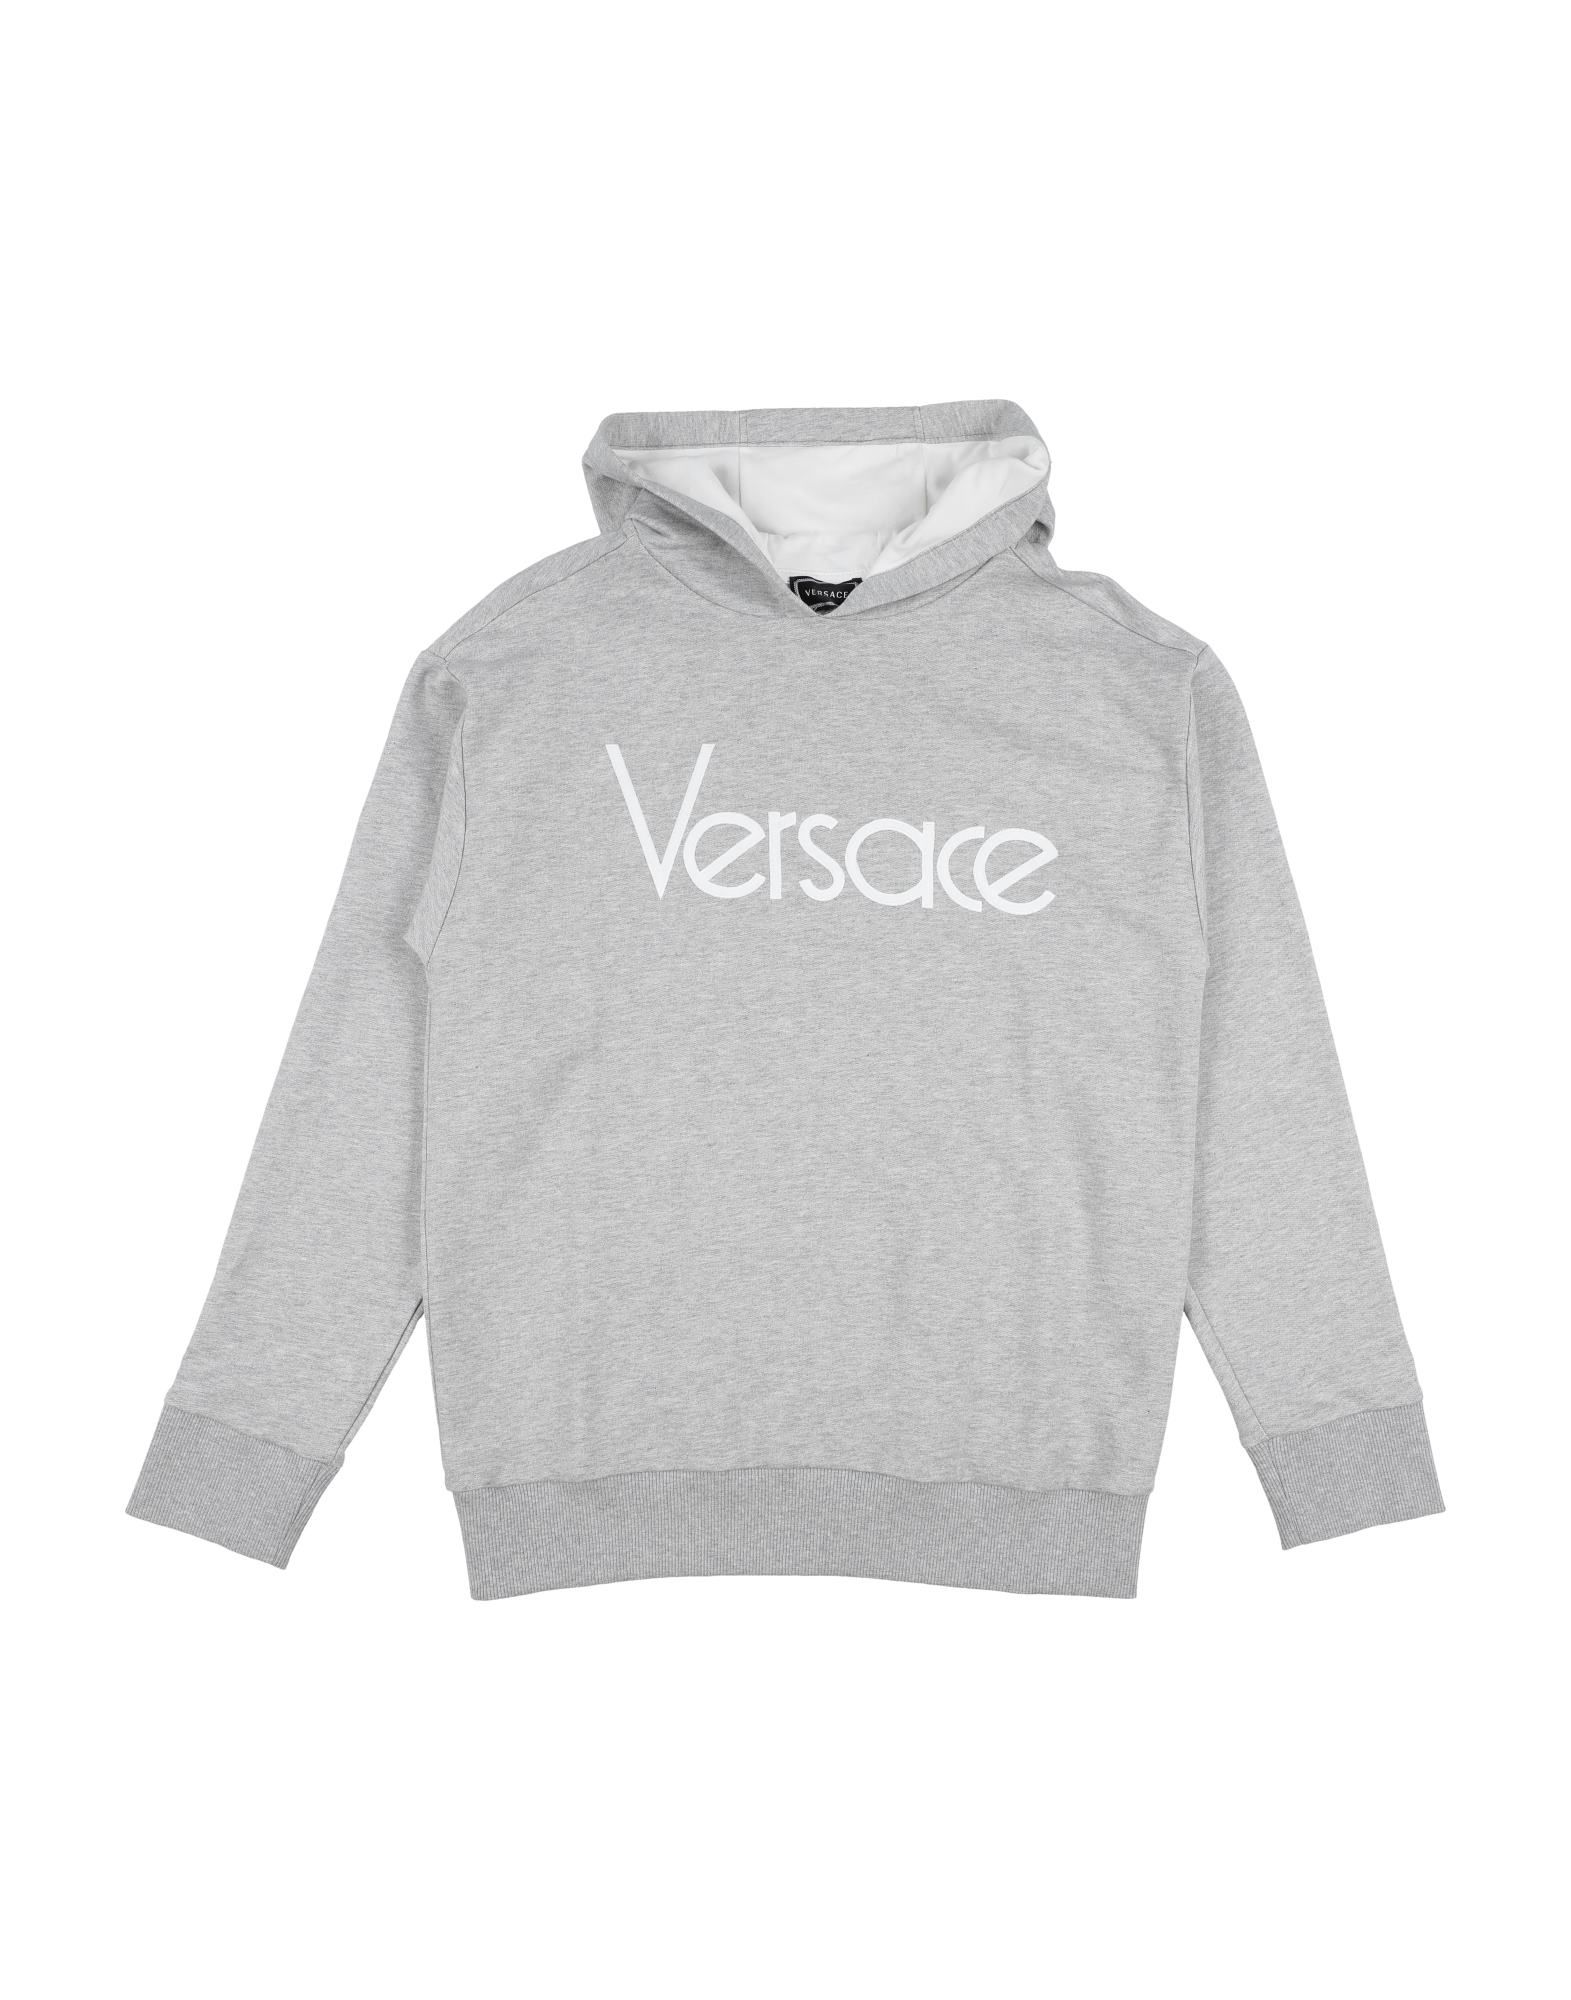 Versace Young Kids' Sweatshirts In Grey